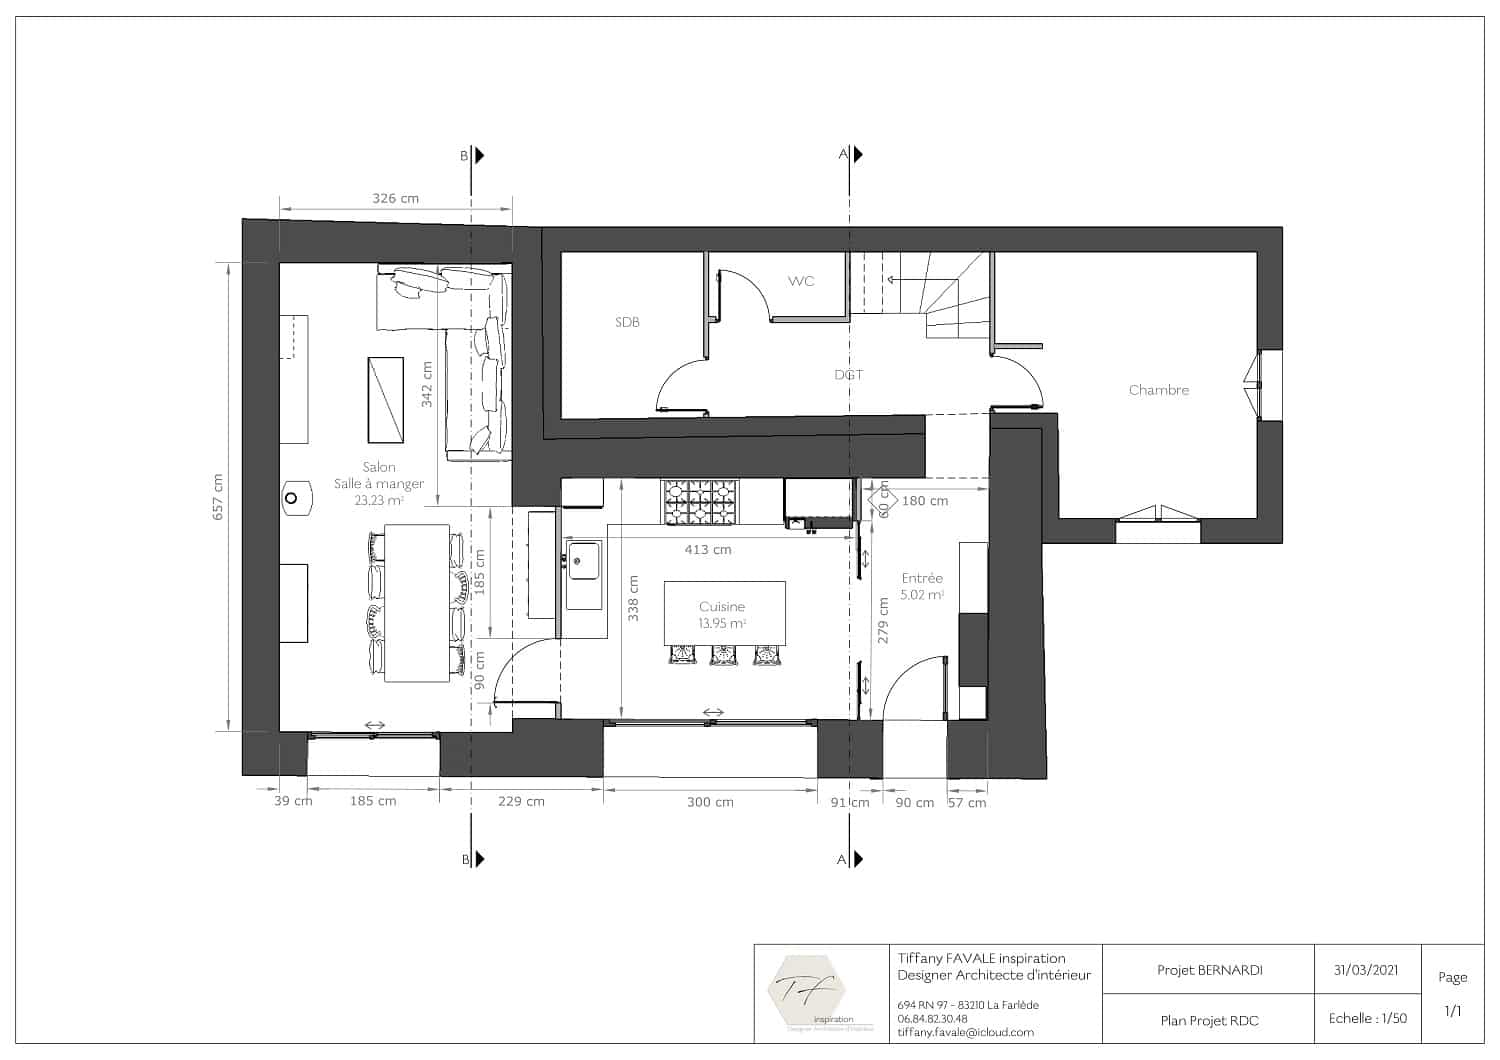 Plan d'implantation 2D - TF inspiration - Architecte et décoratrice d'intérieur